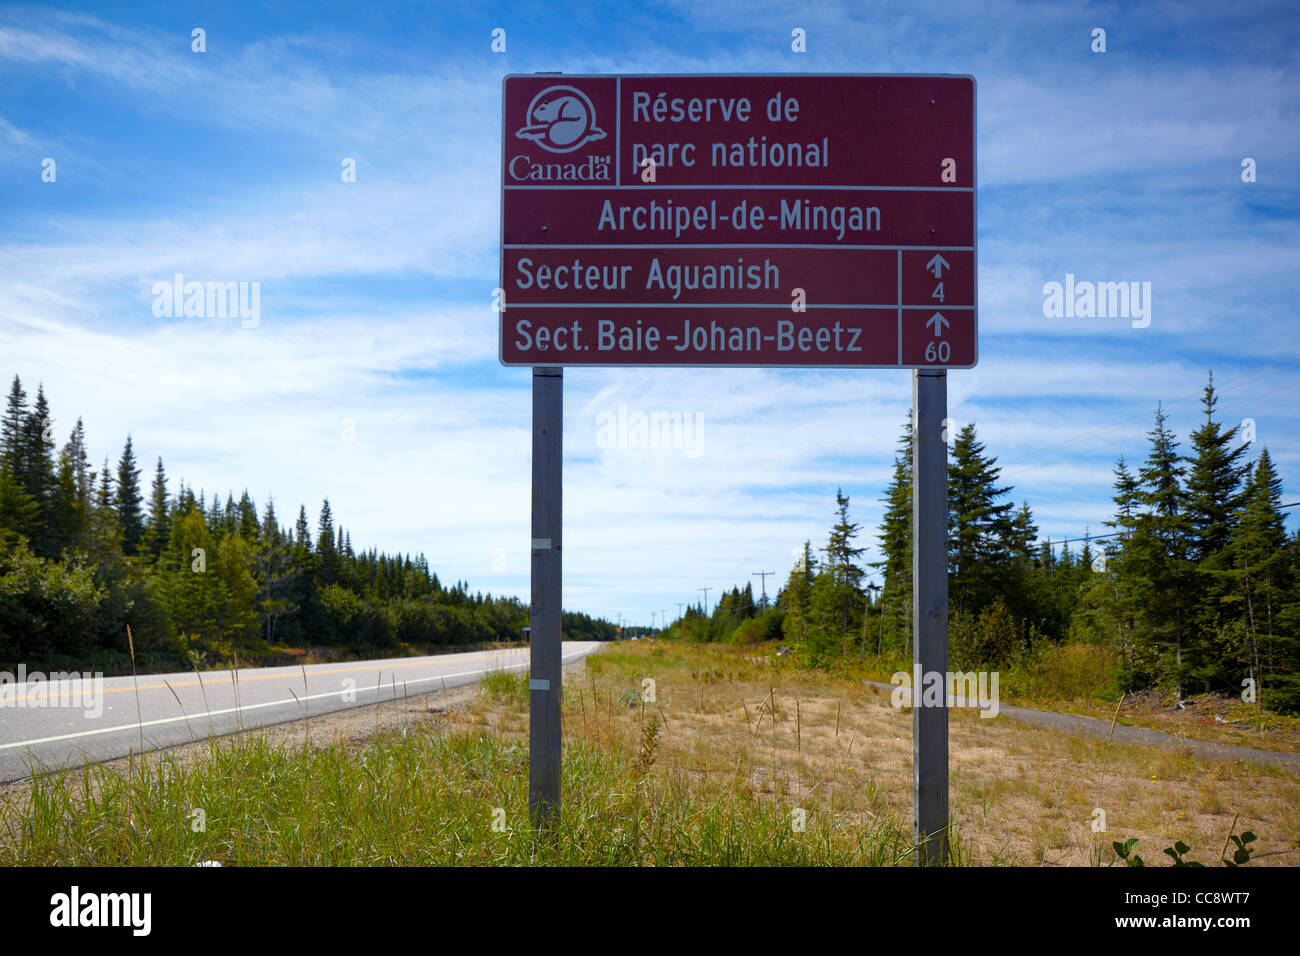 Archipel de Mingan, riserva de Parc National, Quebec, Canada Foto Stock